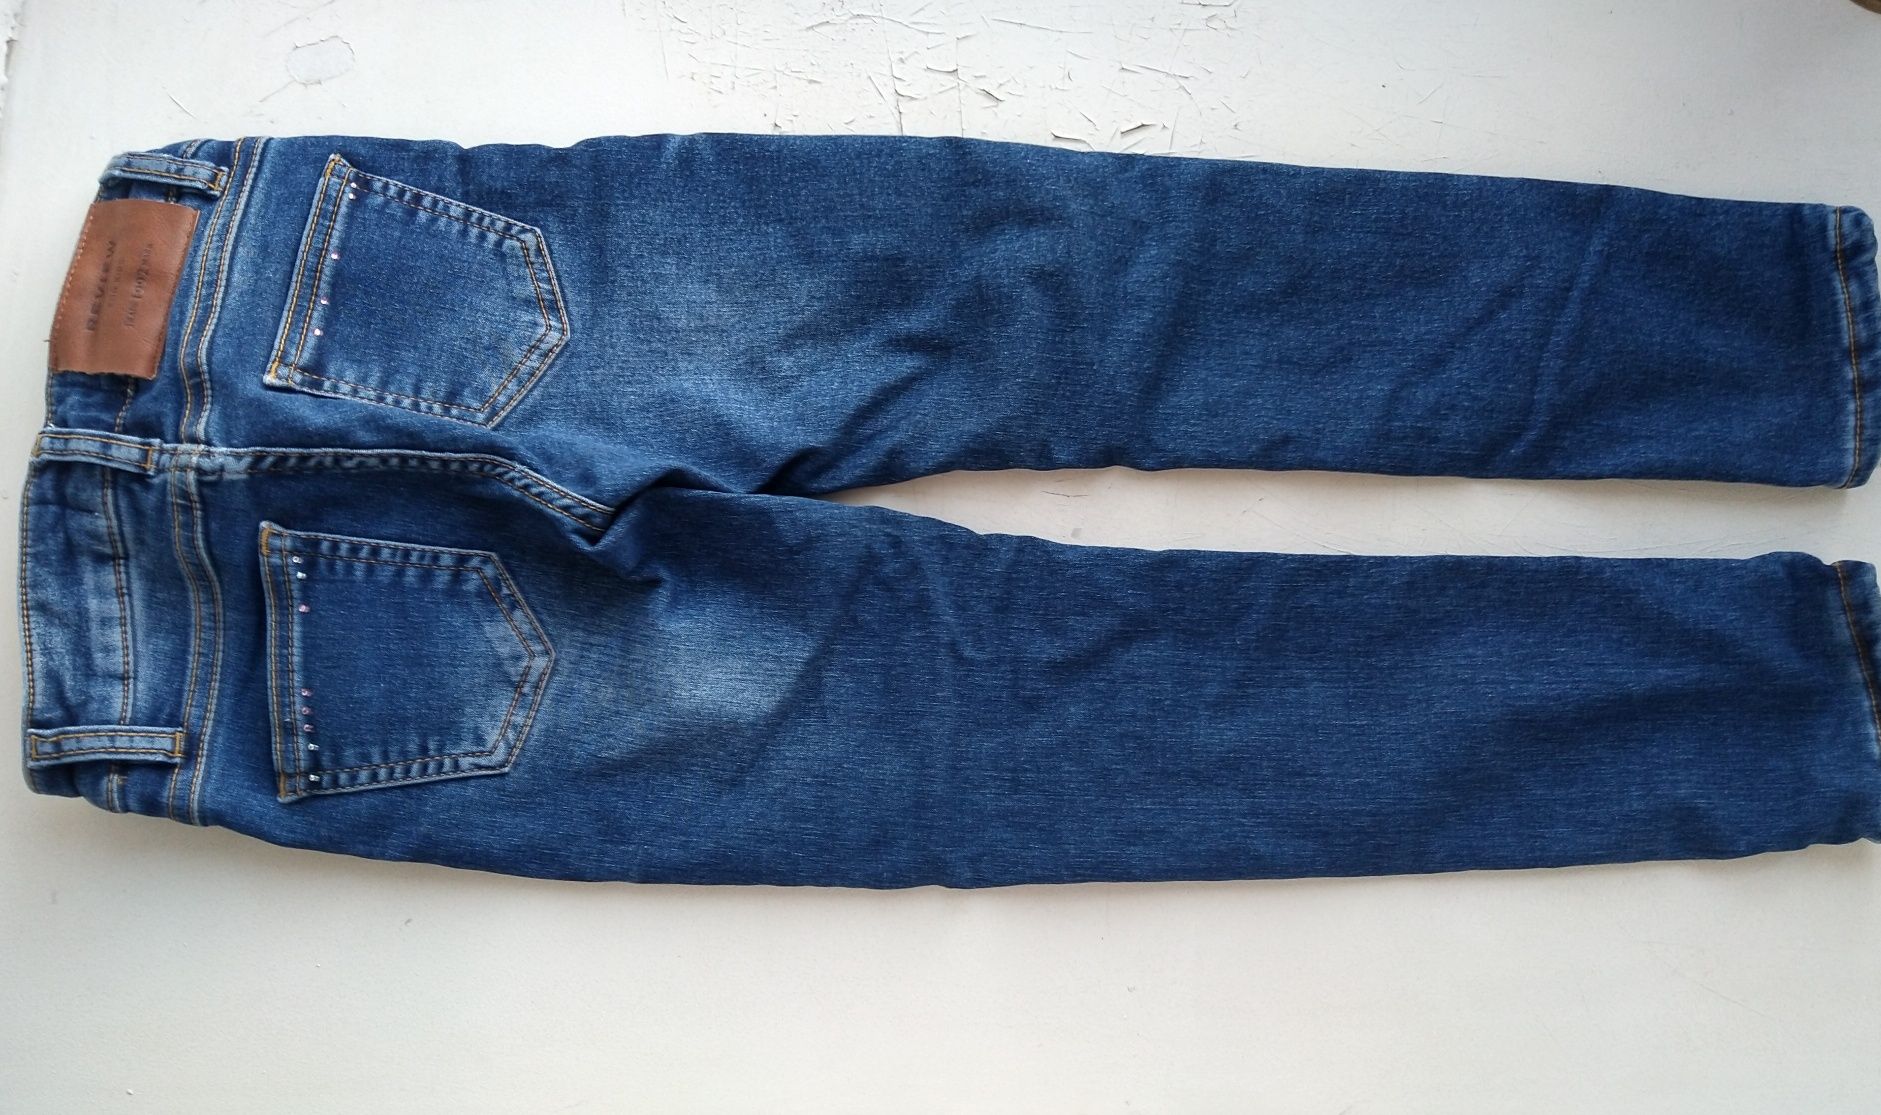 Продам детские джинсы, рост 122